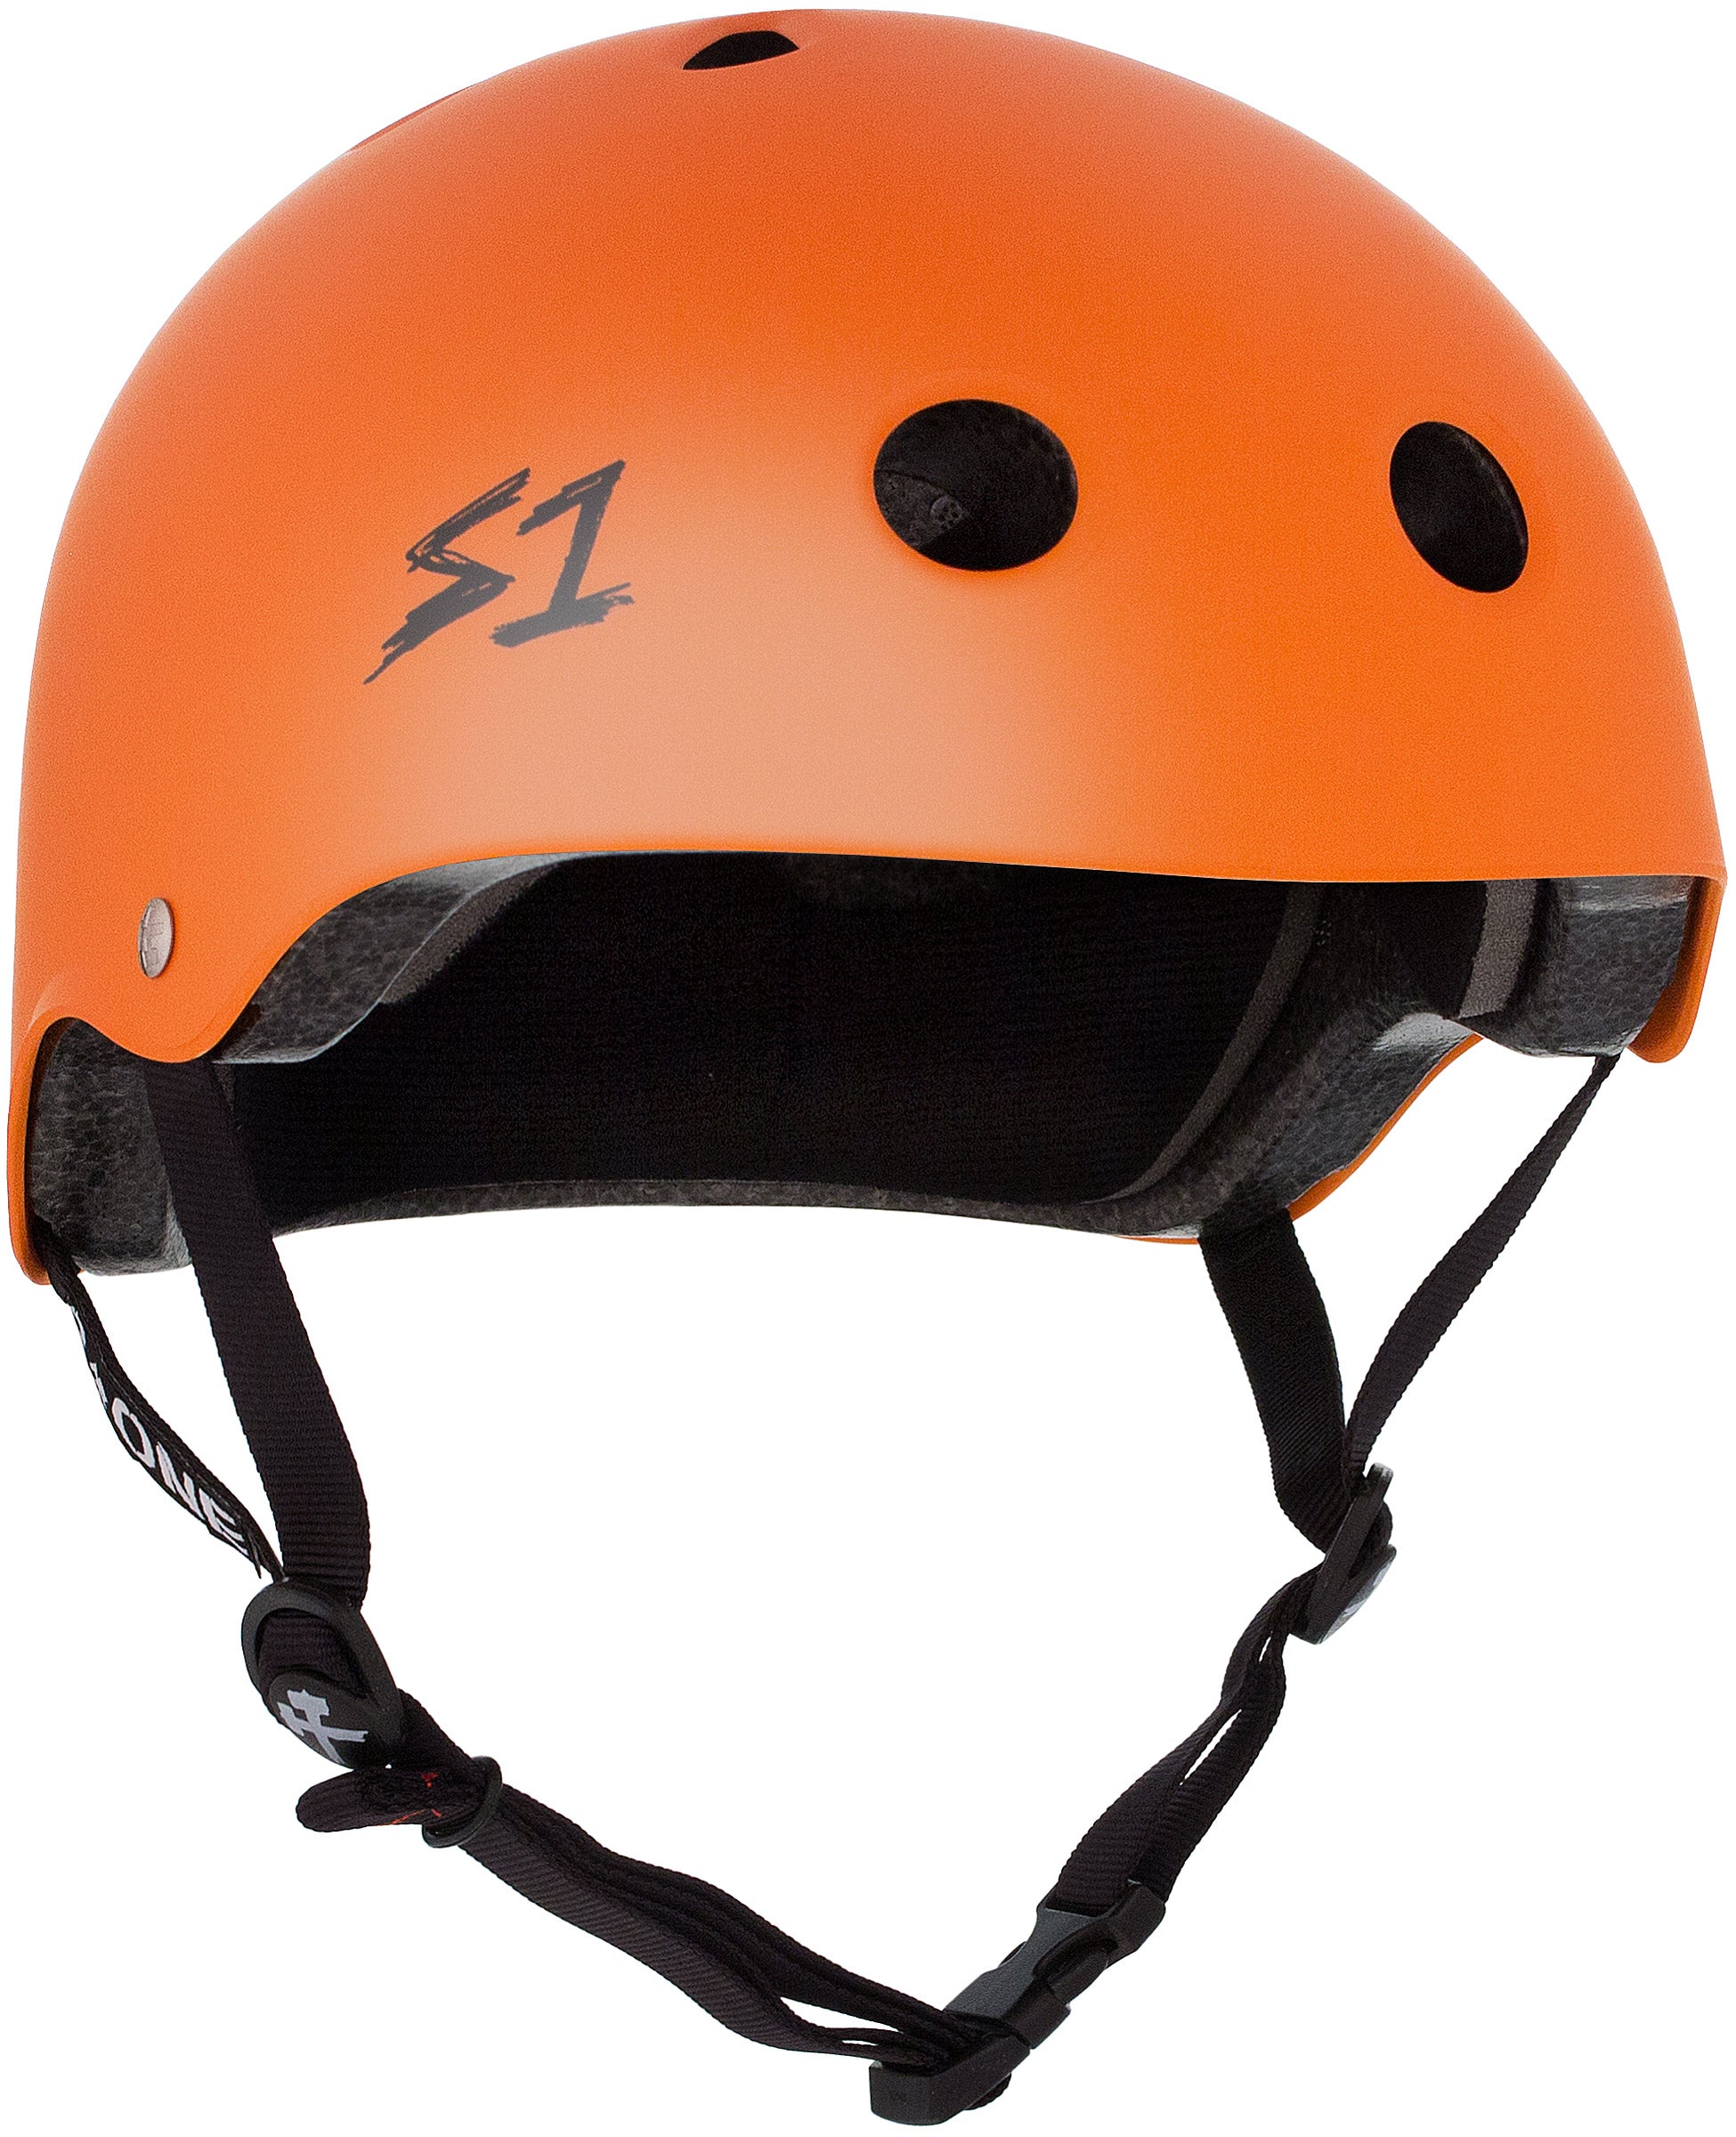 S1 Lifer Helmet - ORANGE MATTE | Pigeon's Roller Skate Shop